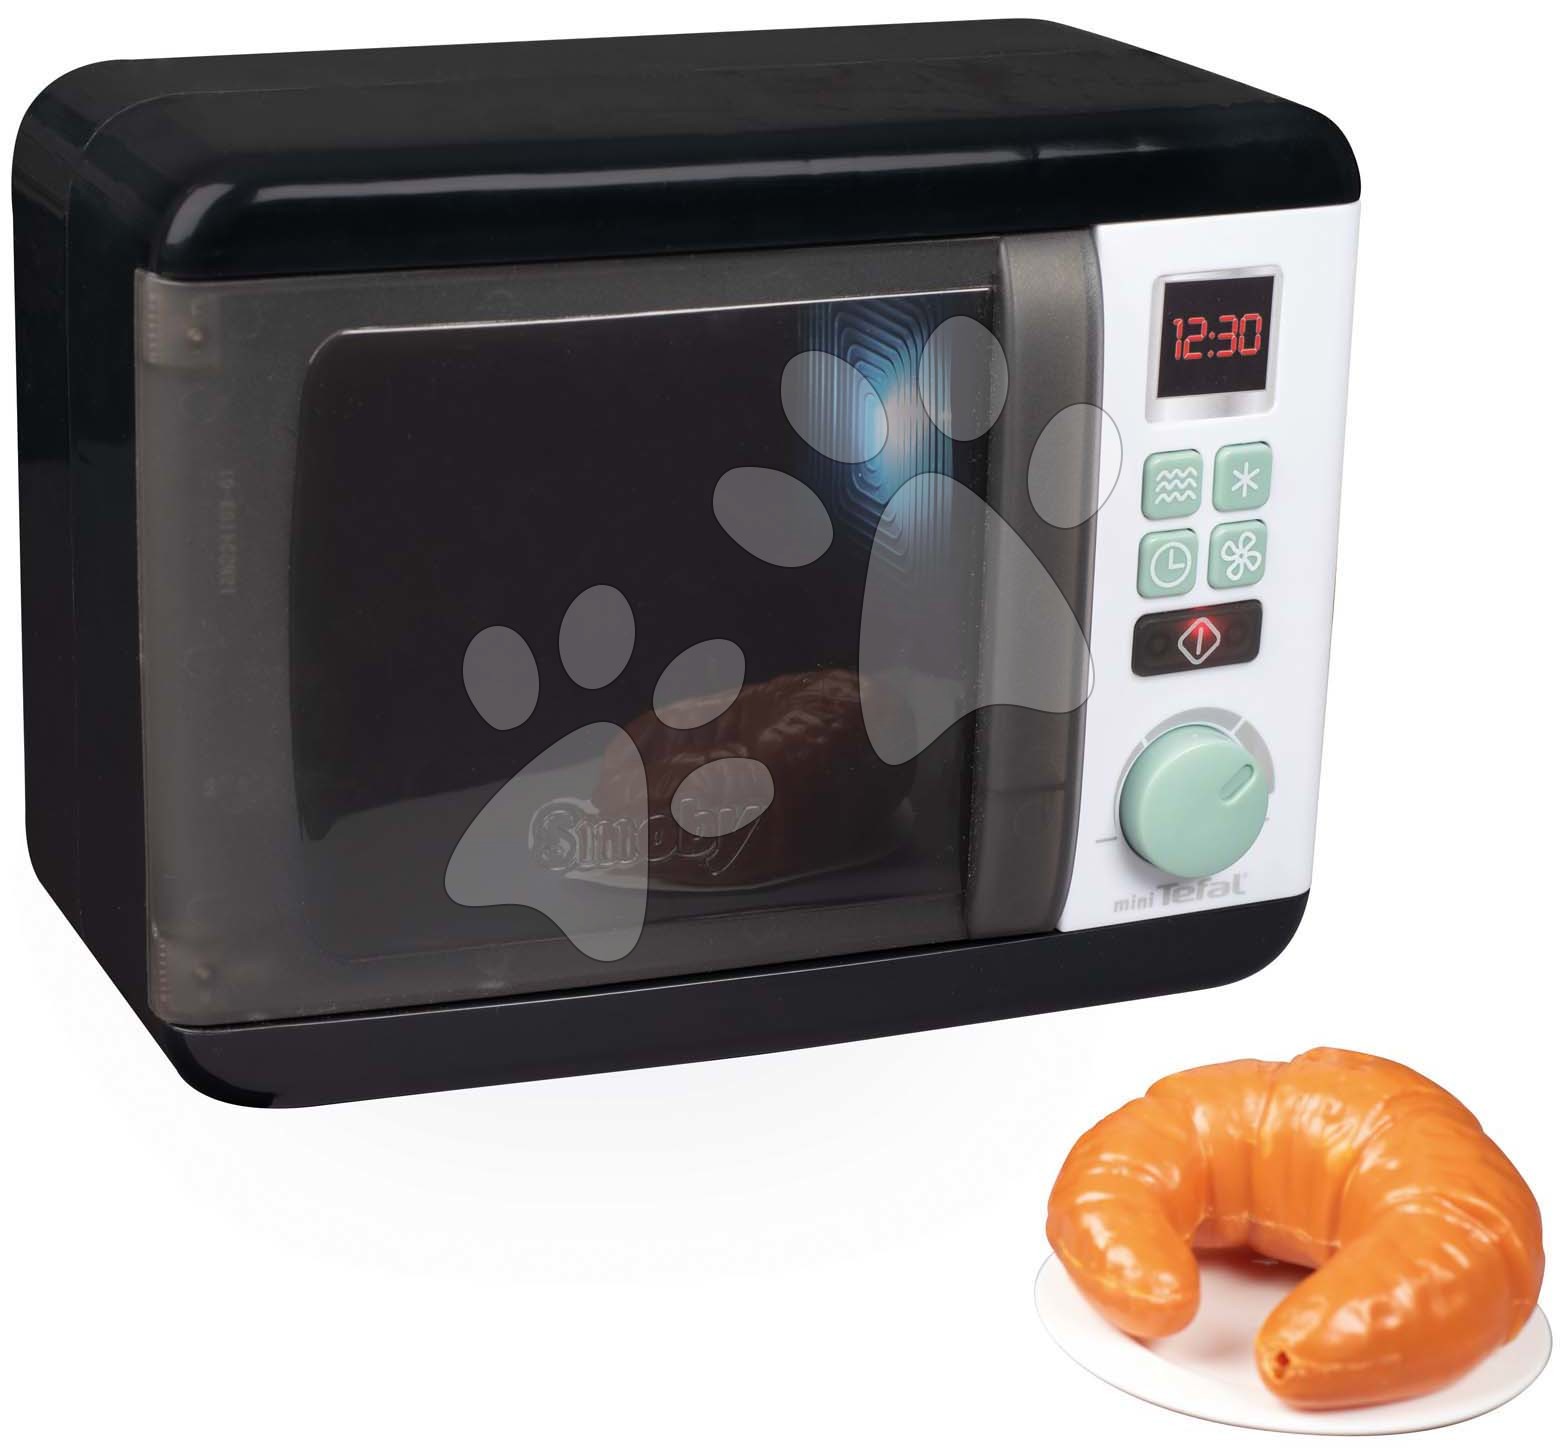 Spotrebiče do kuchynky - Mikrovlnka so zvukom a svetlom Tefal Electronic Microwave Smoby elektronická s “cric-crac“ gombíkom a doplnkami šedo-olivová